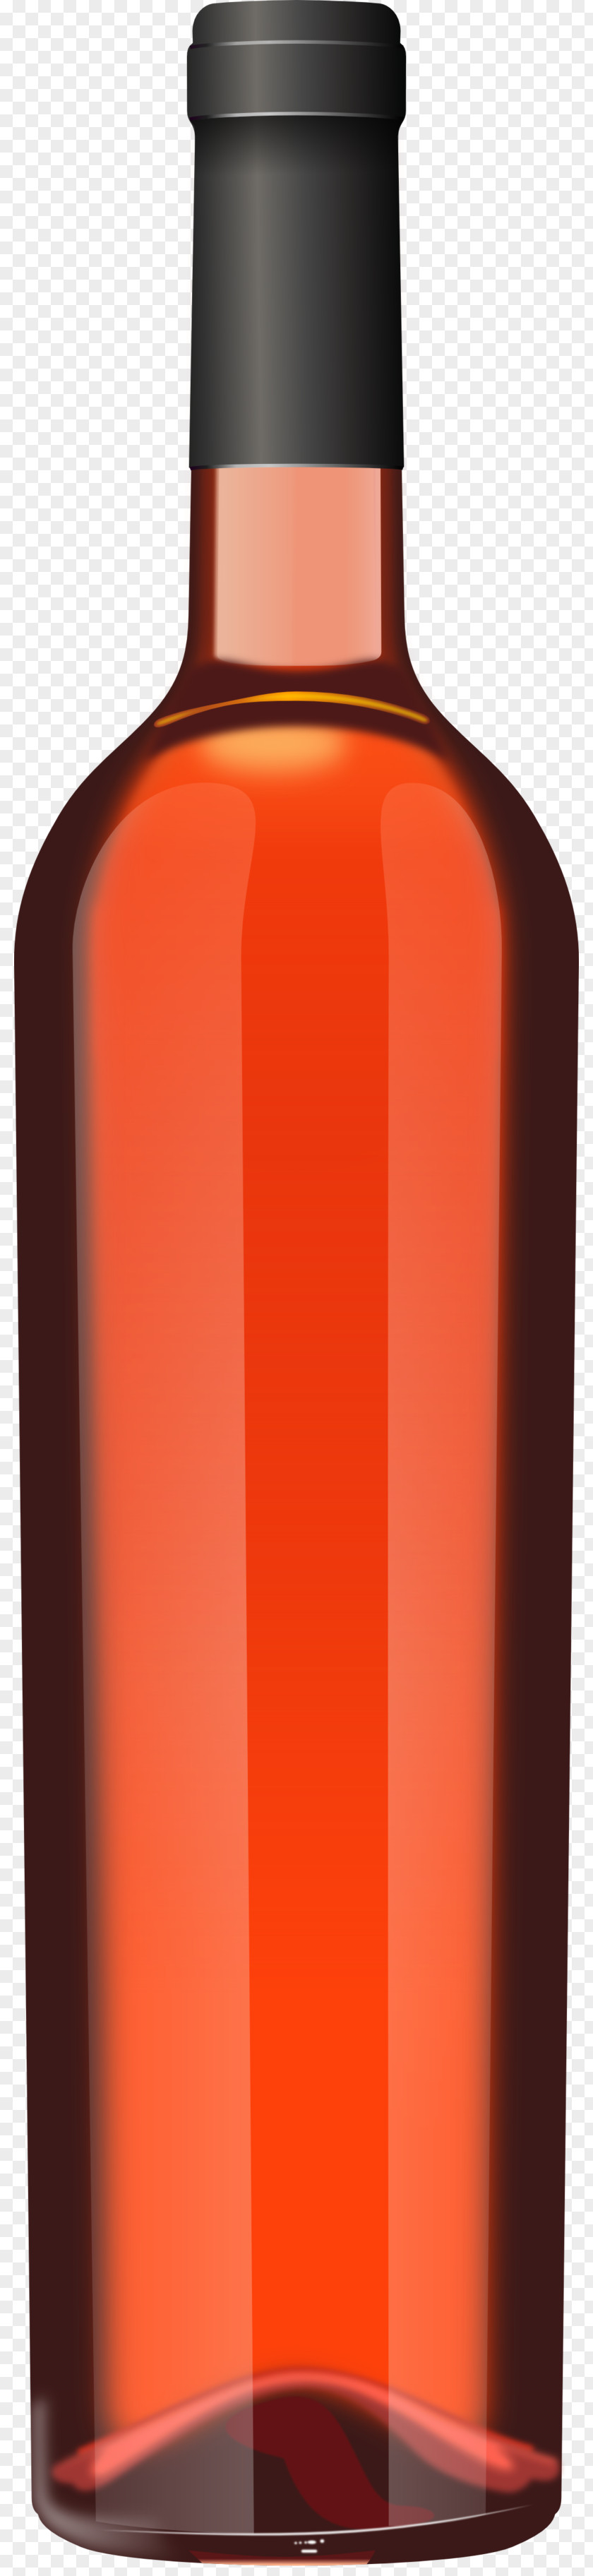 Wine Bottle Red Champagne Distilled Beverage Beer PNG